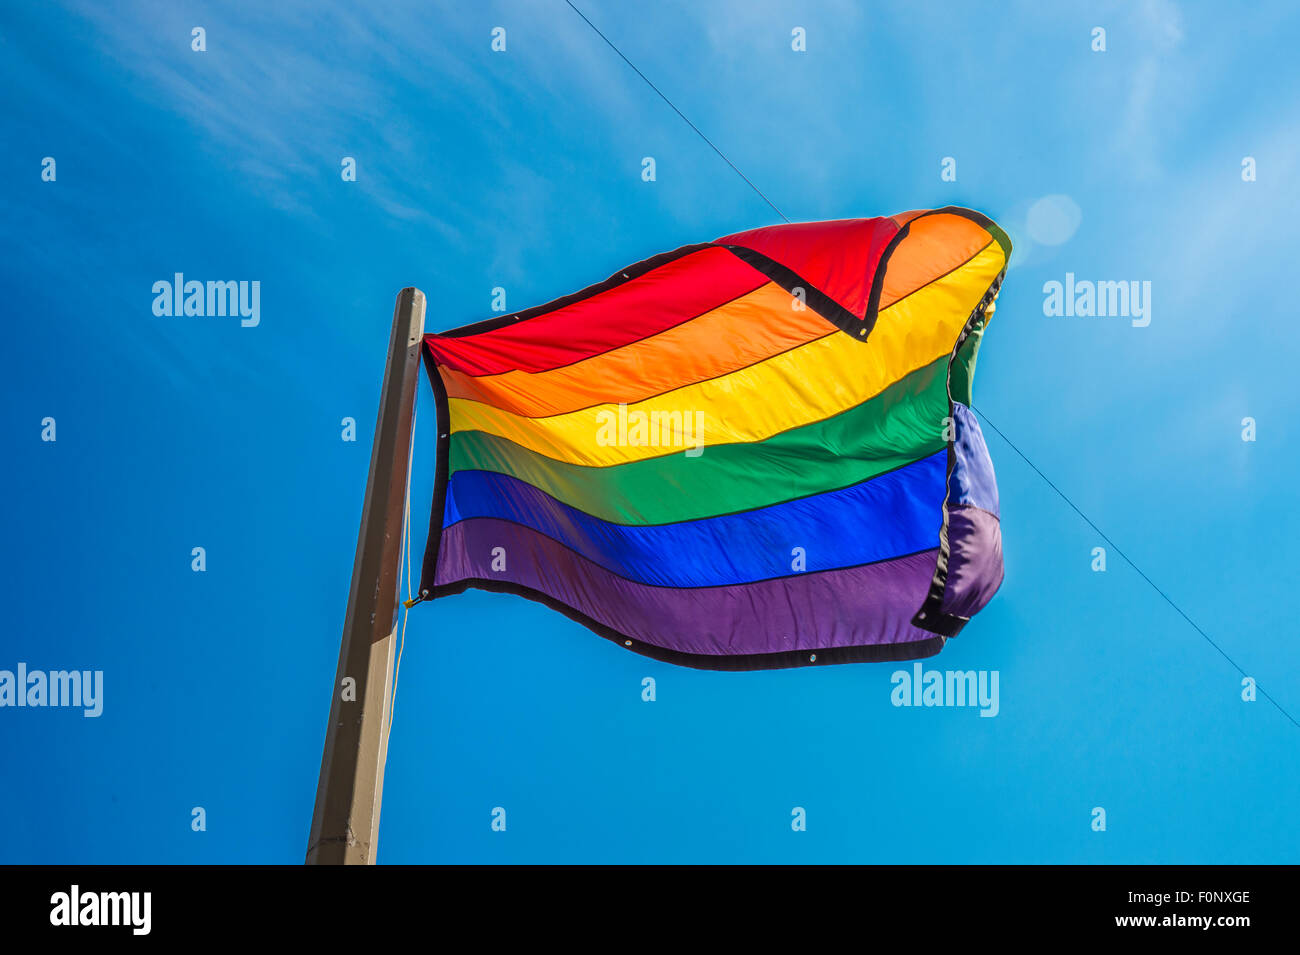 Gay rainbow flag over blue sky Stock Photo